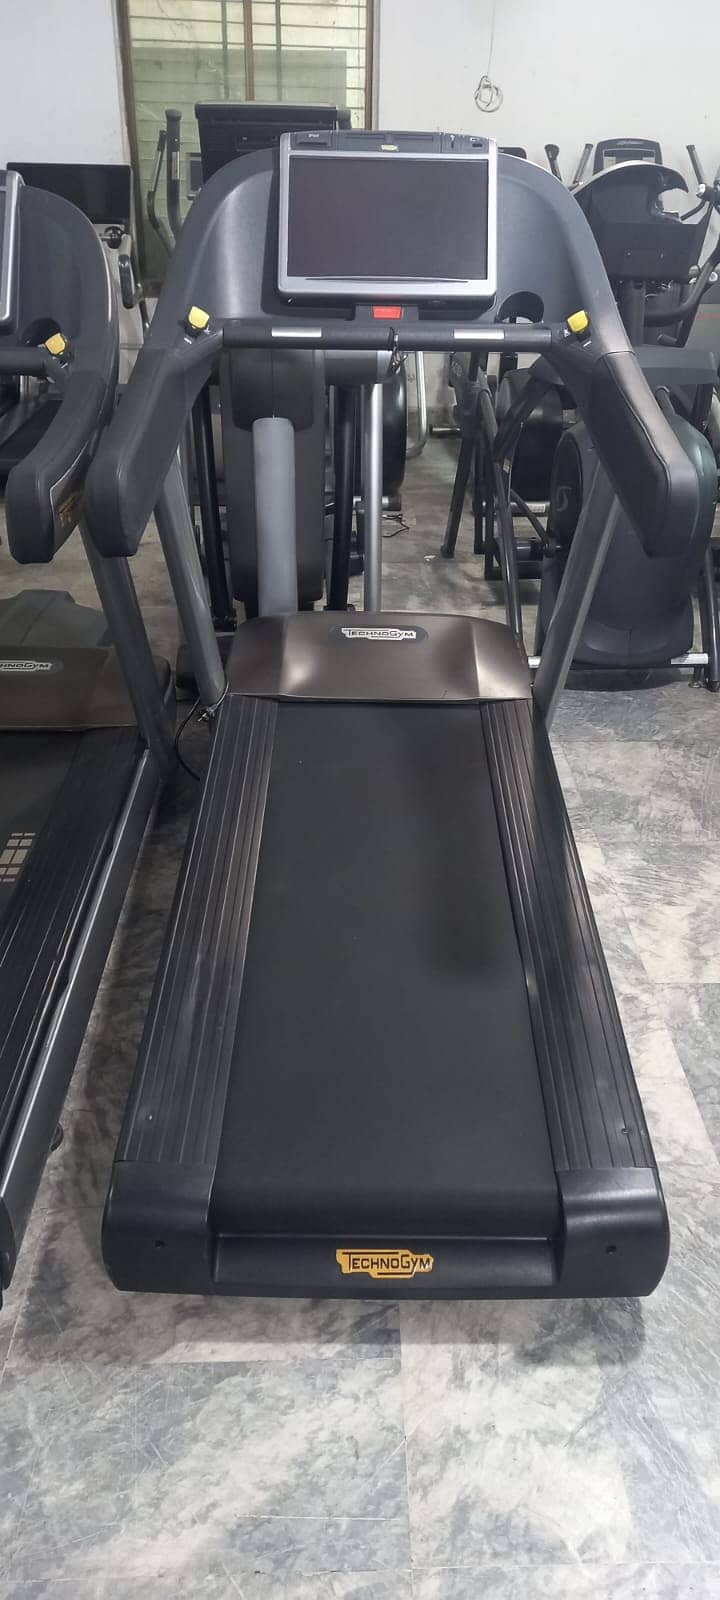 treadmills Technogym Refurbished Running Machine Ellipticals dumbbells 1